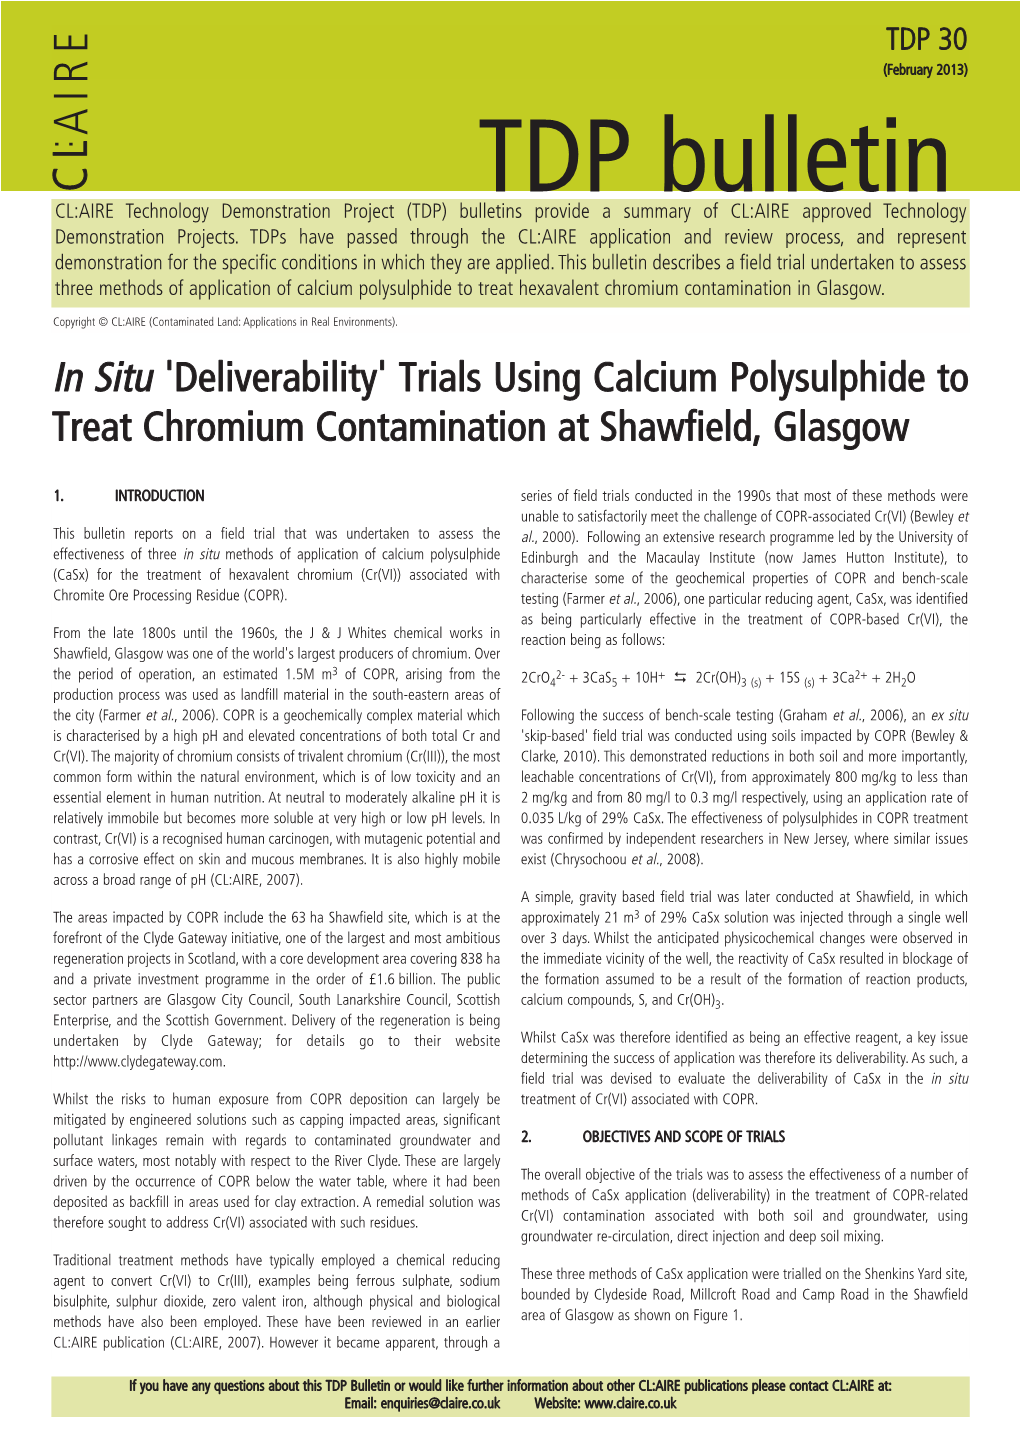 Trials Using Calcium Polysulphide to Treat Chromium Contamination at Shawfield, Glasgow